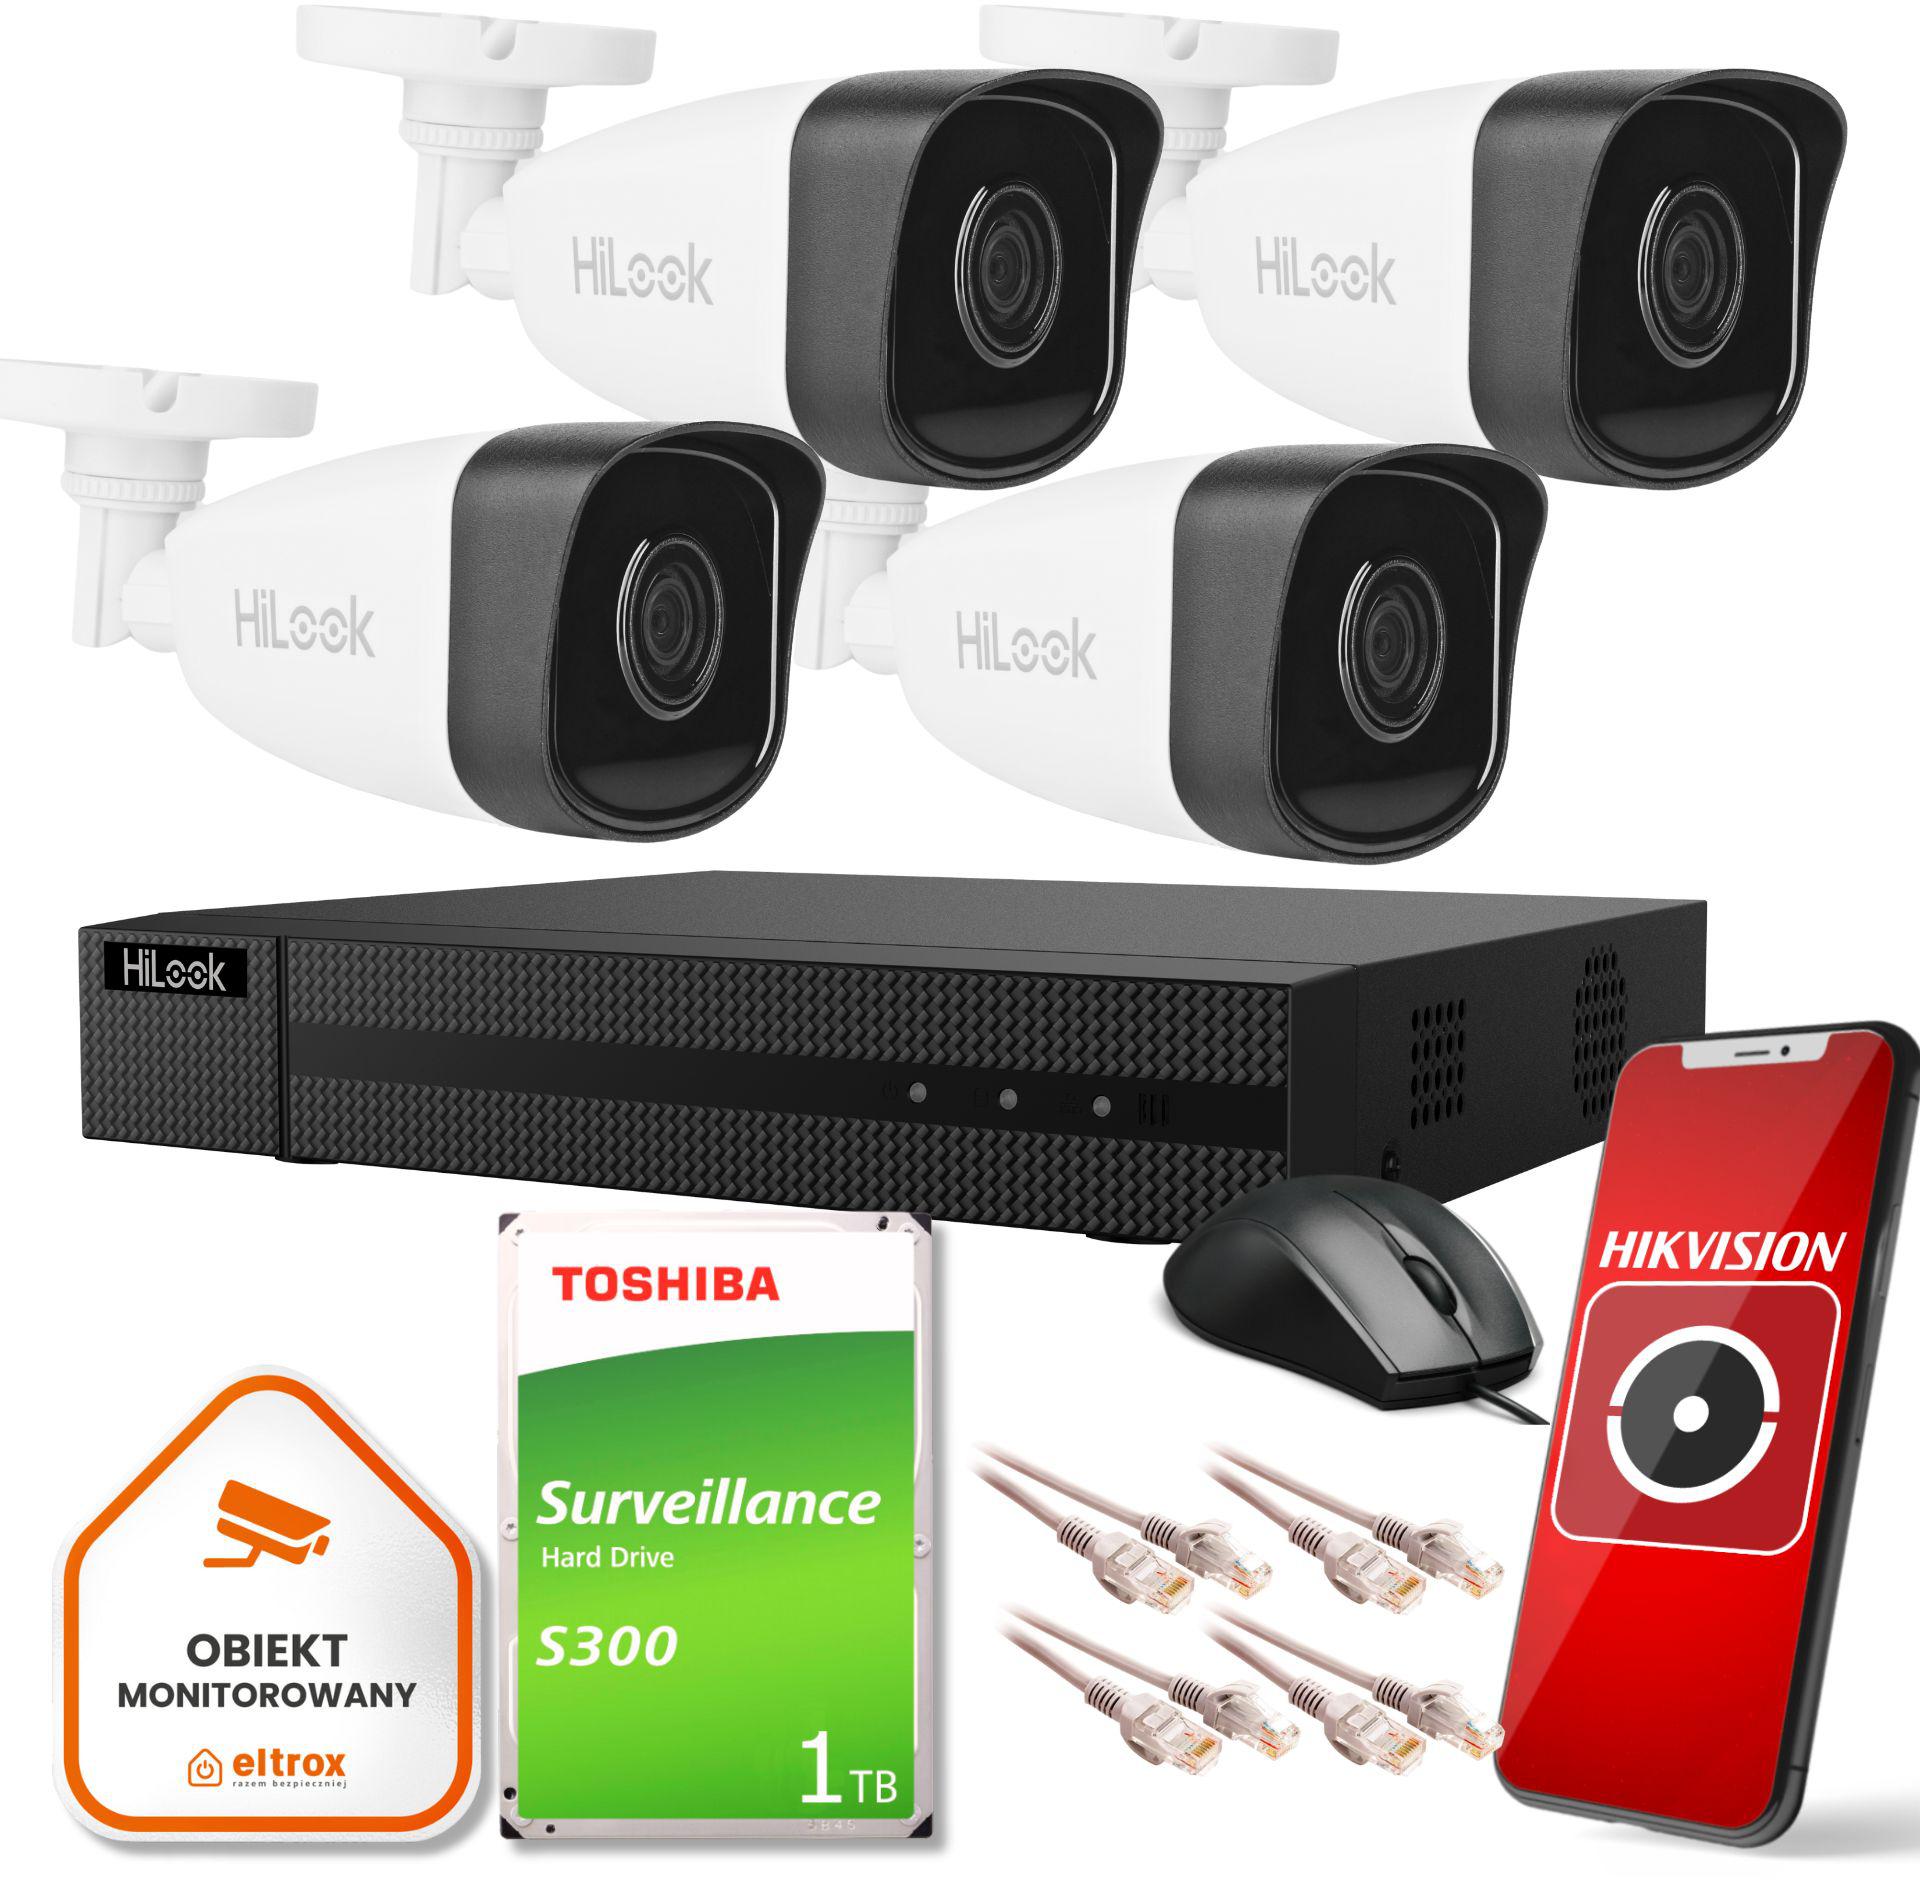 Kompletny zestaw monitoringu Hilook 4 kamer IP IPCAM-B5 do Twojego domu czy biura